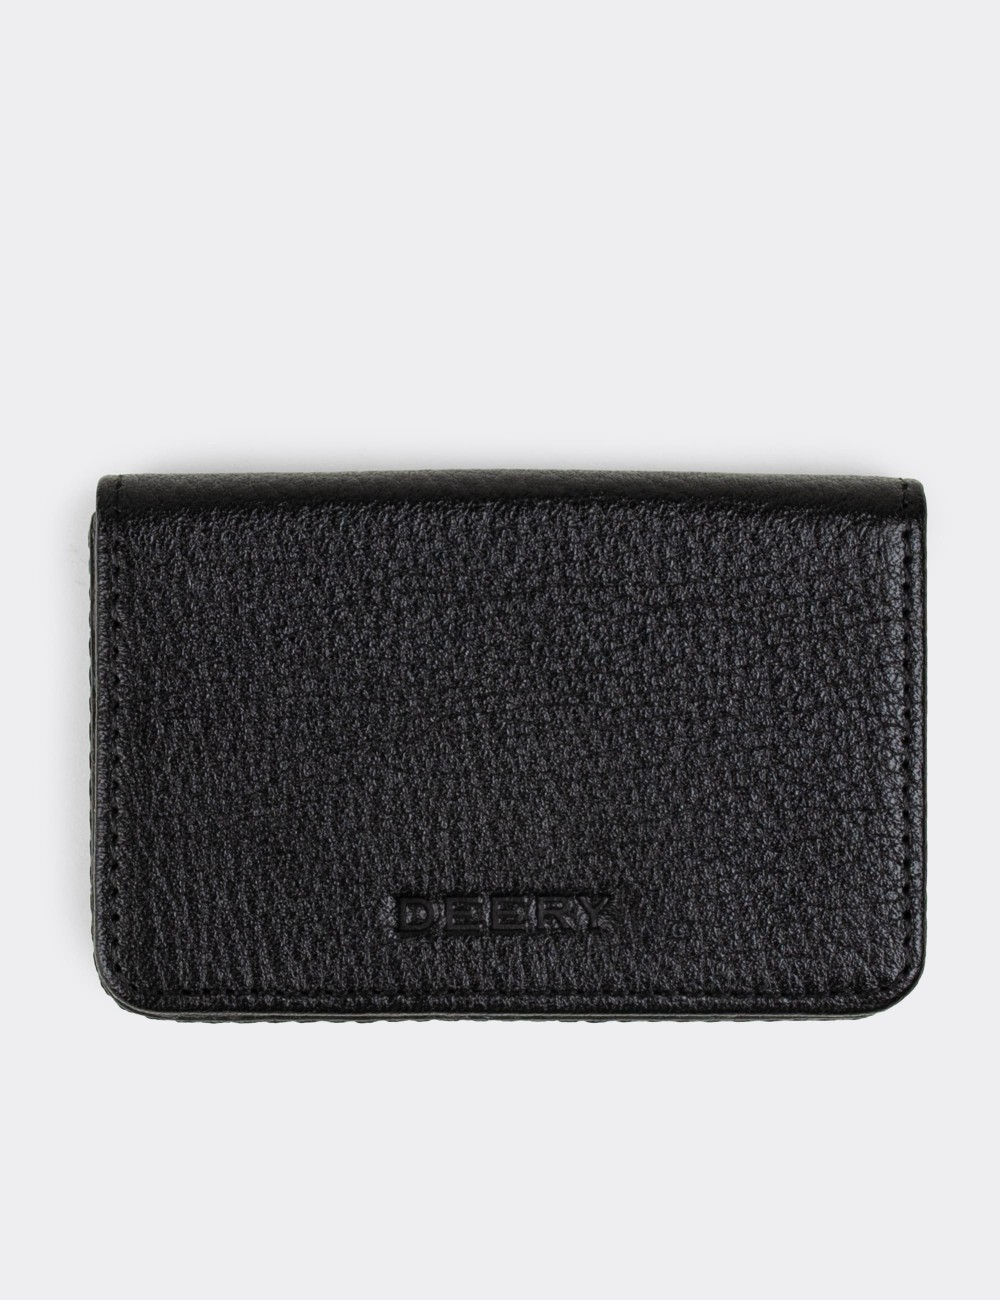  Leather Black Men's Wallet - 00522MSYHZ01